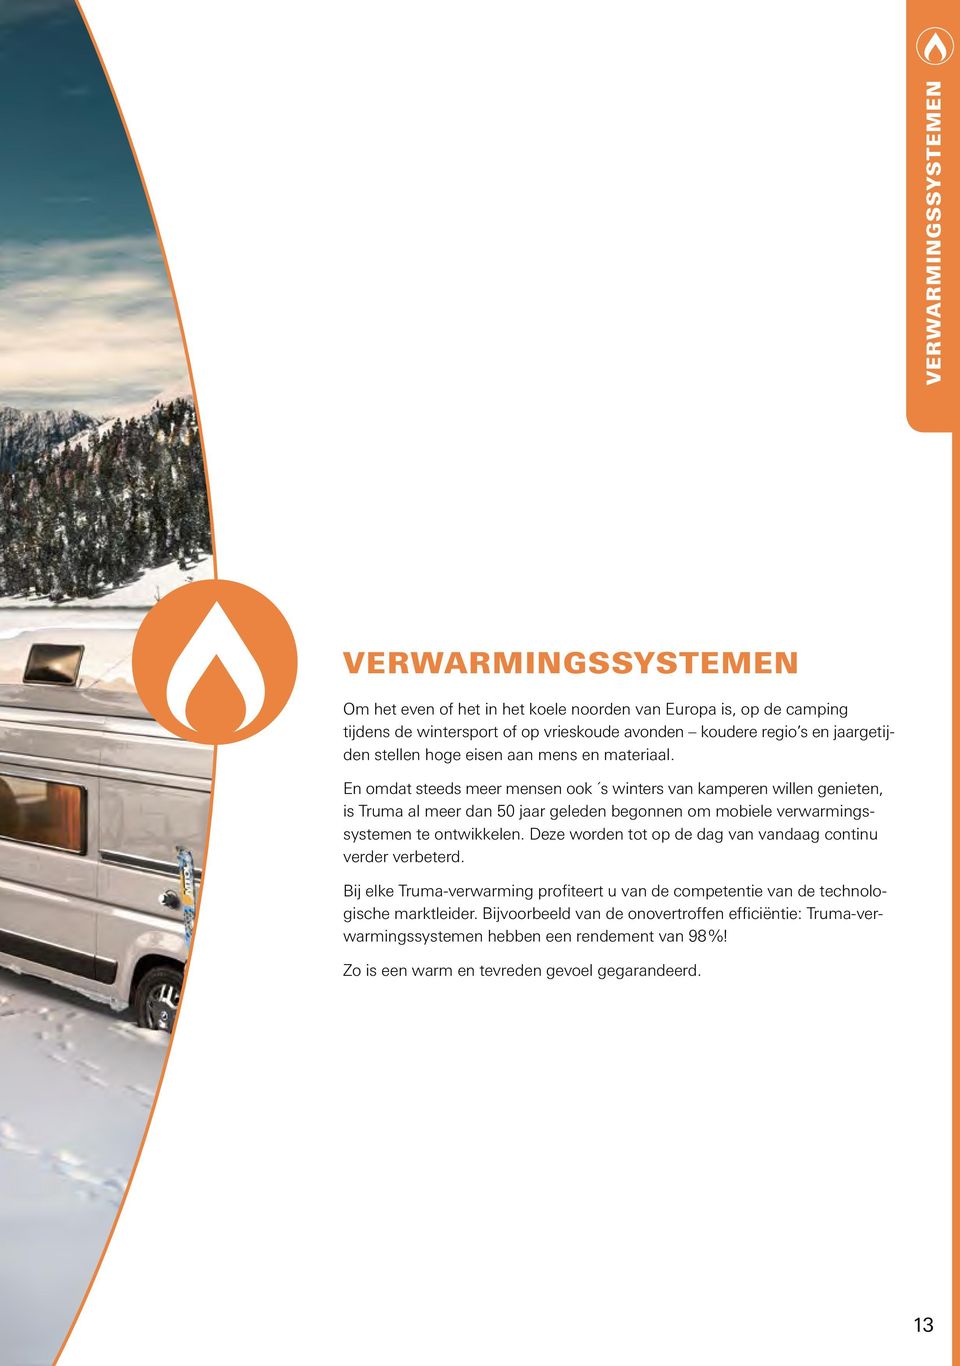 En omdat steeds meer mensen ook s winters van kamperen willen genieten, is Truma al meer dan 50 jaar geleden begonnen om mobiele verwarmingssystemen te ontwikkelen.